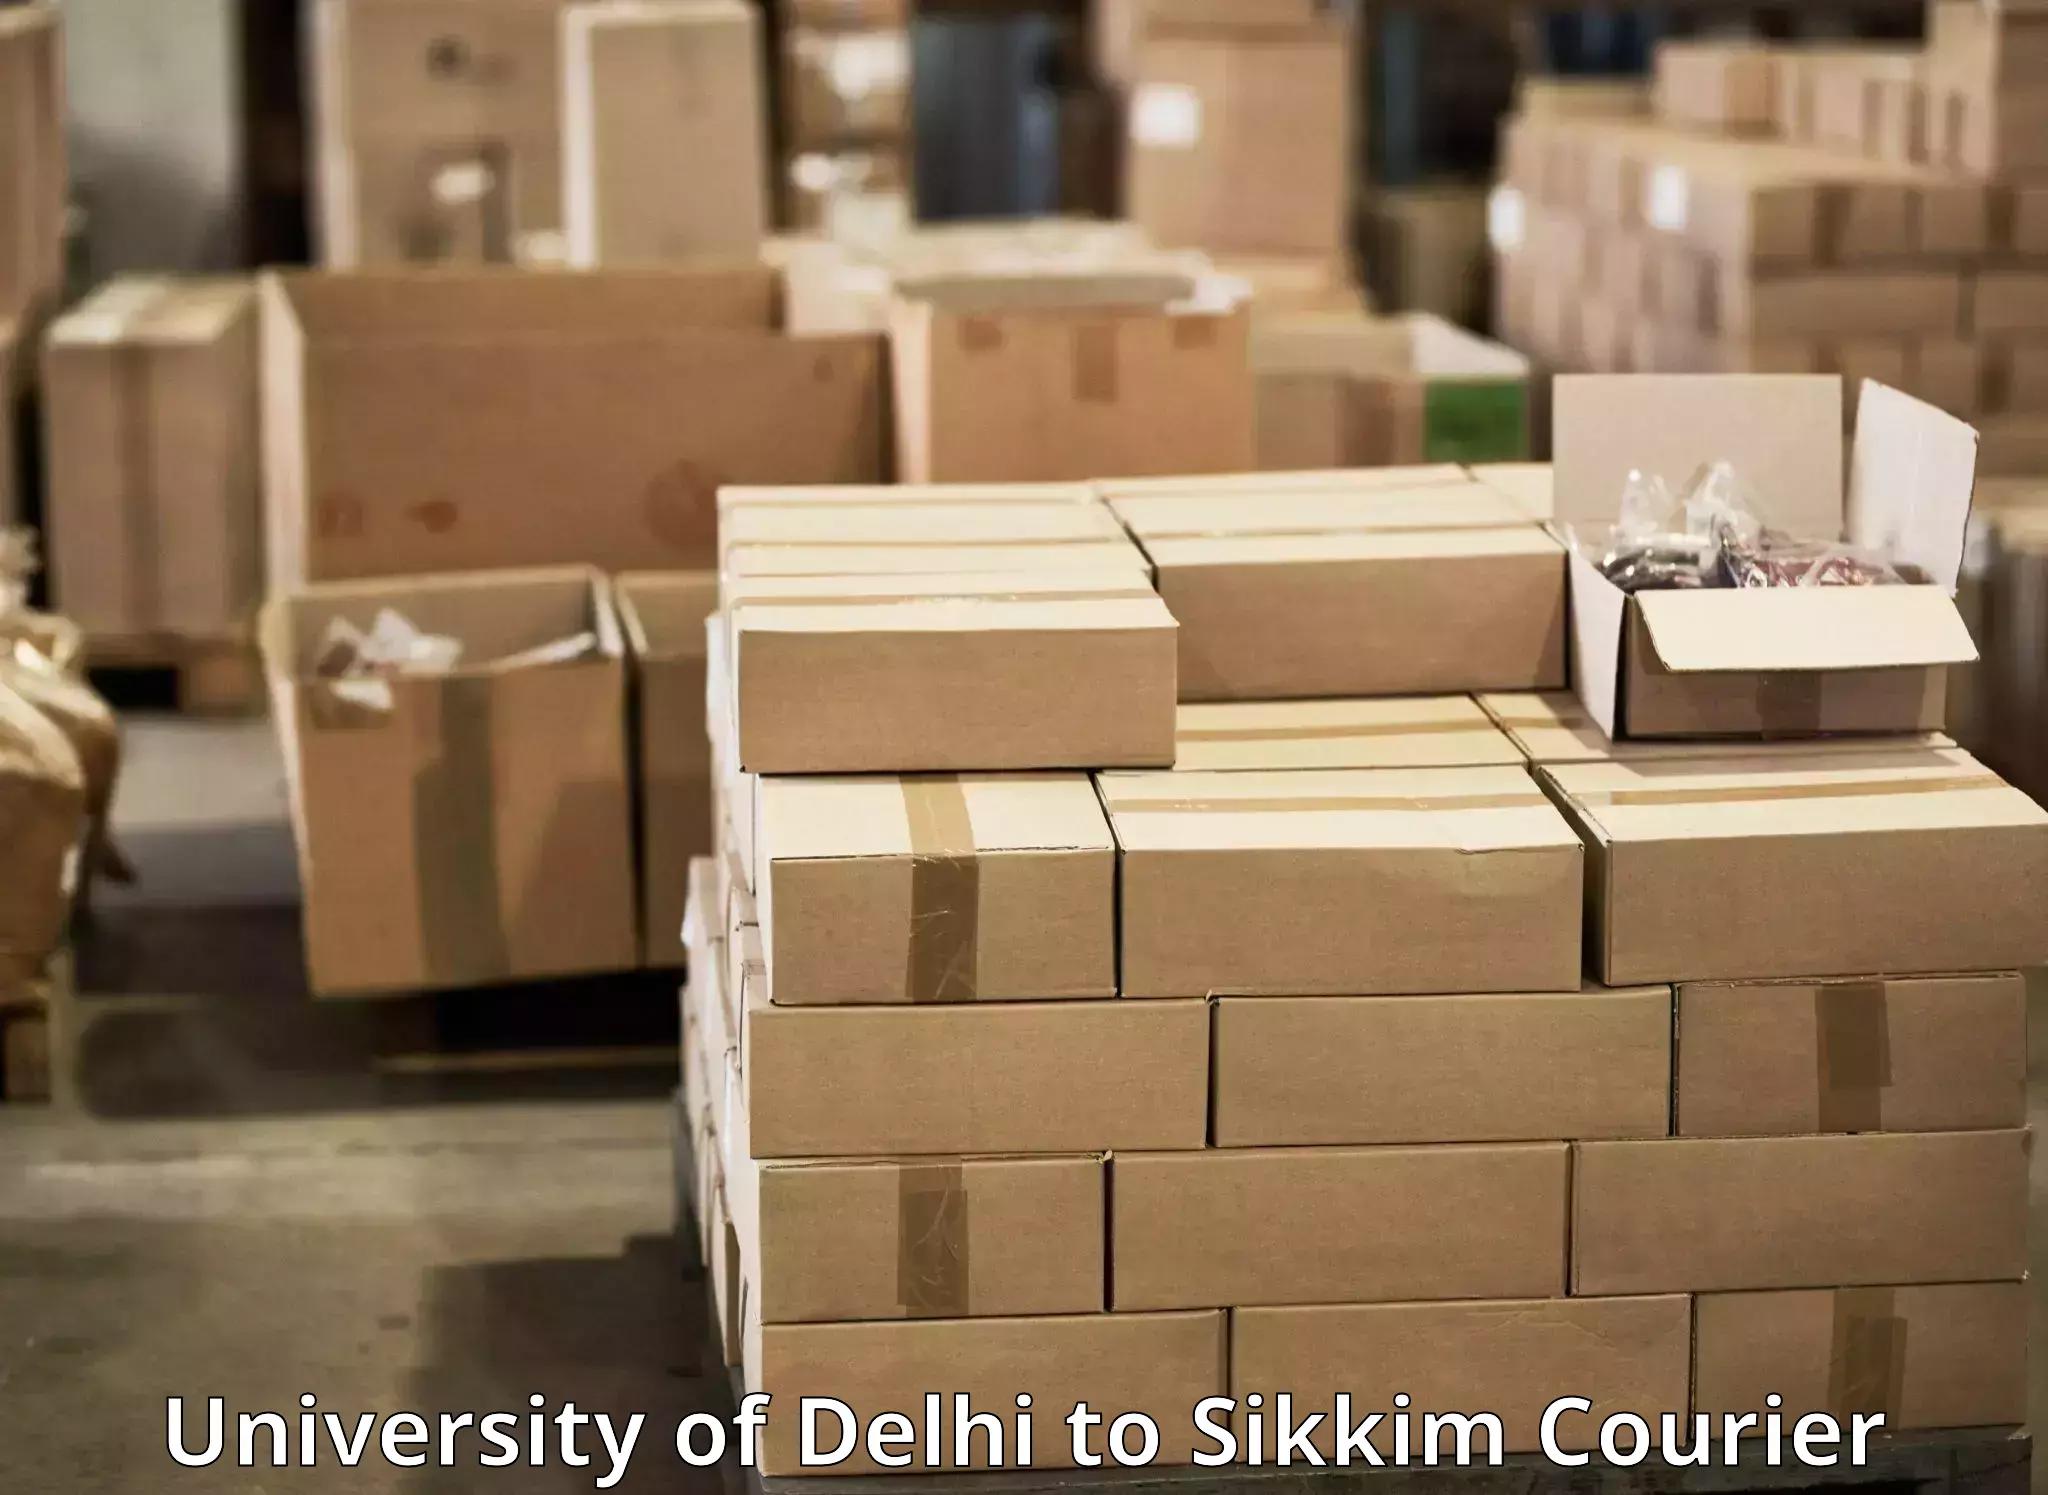 Express logistics service University of Delhi to Mangan